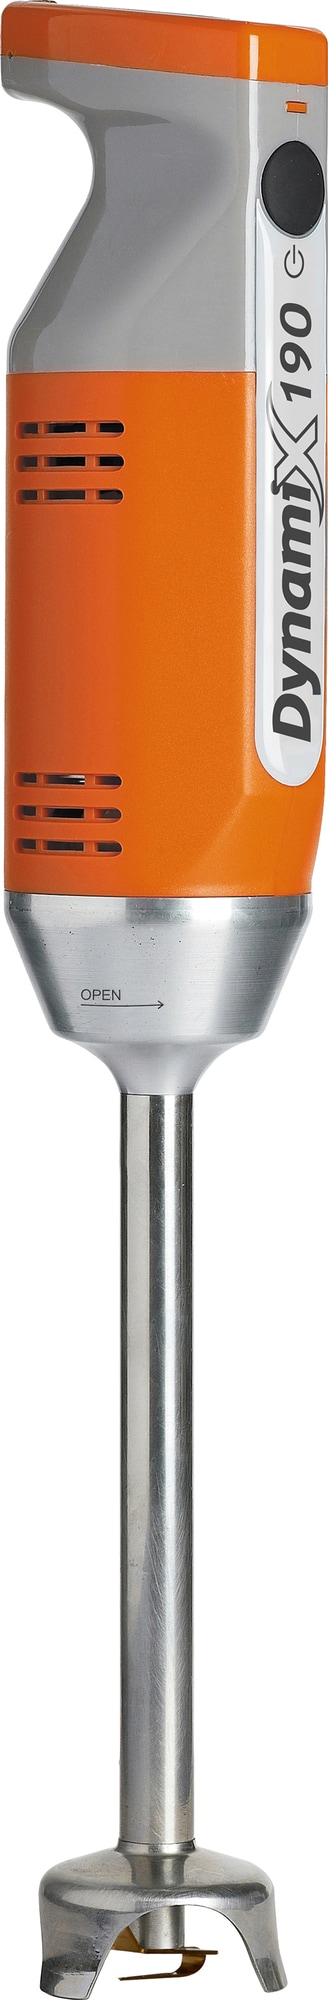 Dynamix stavblender MX090 (orange) thumbnail